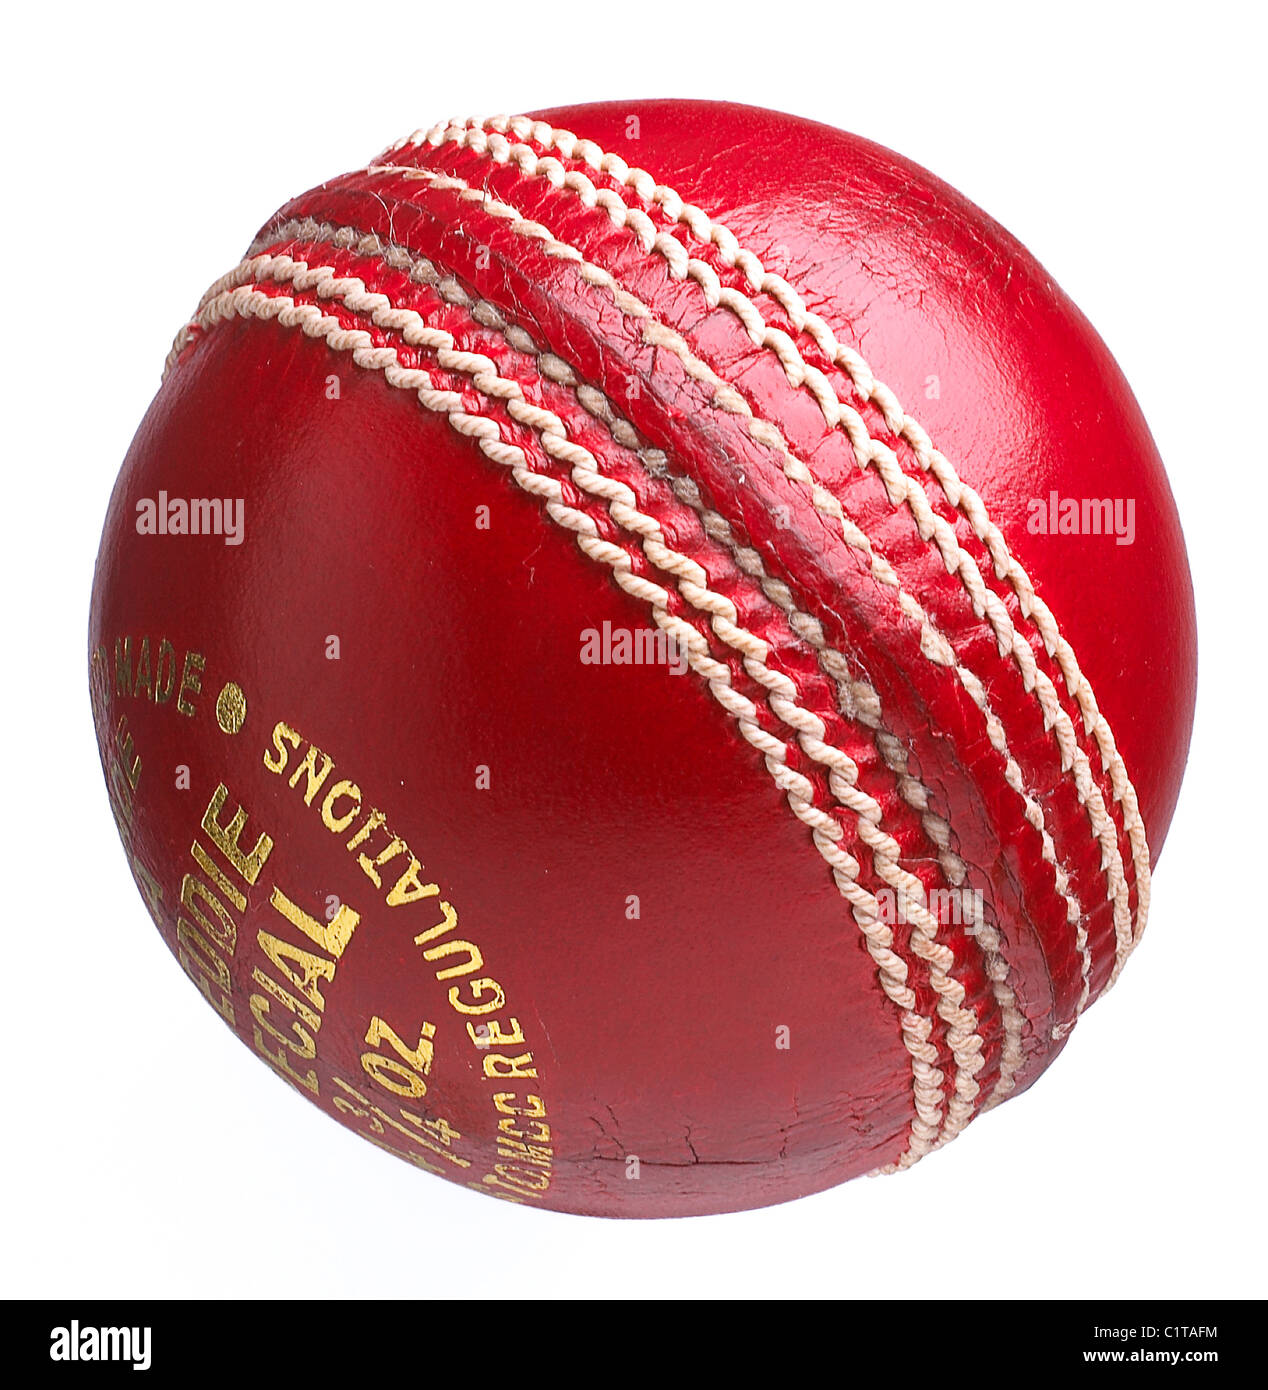 Une balle de cricket en cuir traditionnel sur fond blanc Banque D'Images